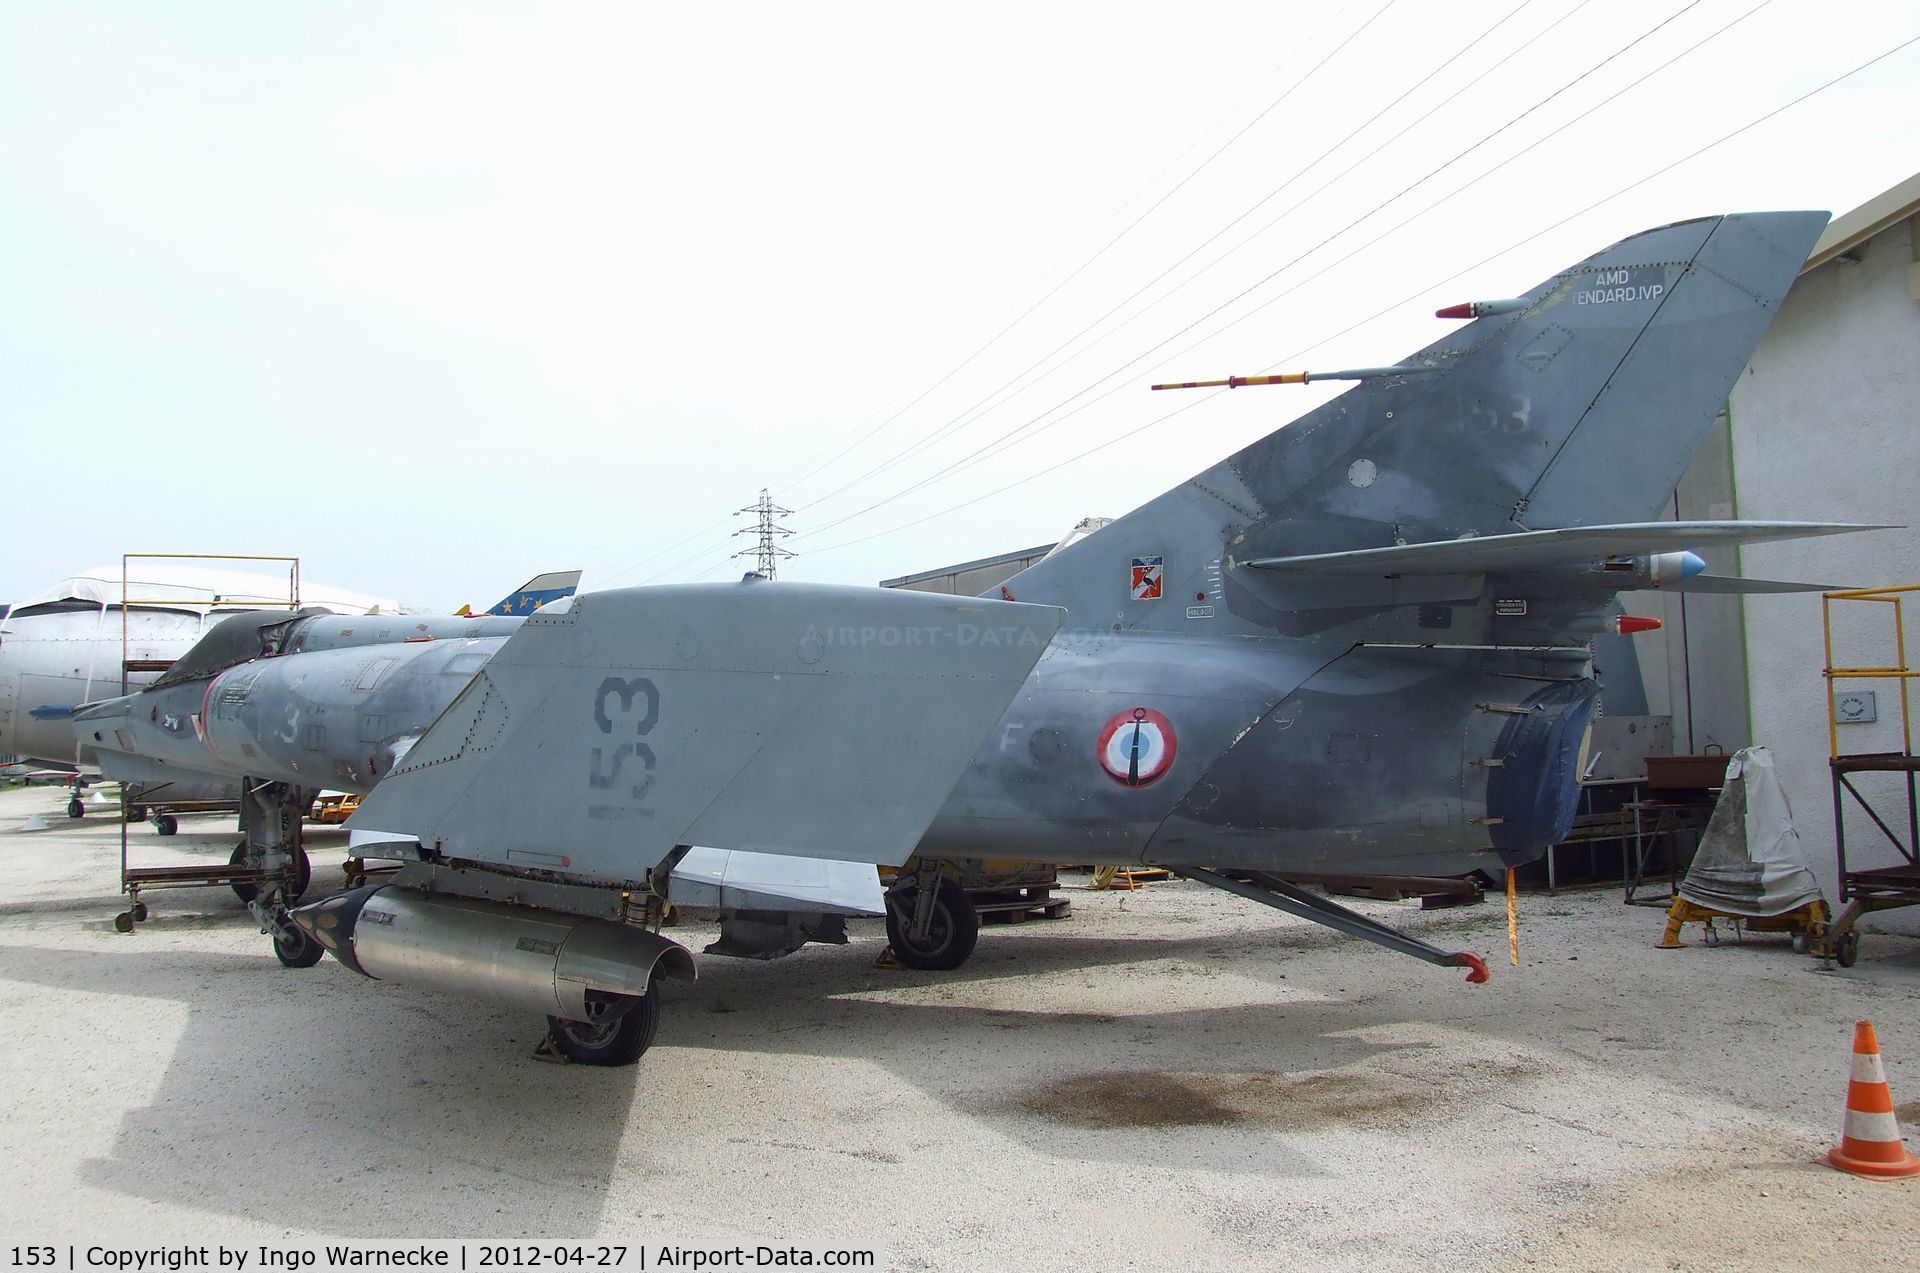 153, Dassault Etendard IV.PM C/N 53, Dassault Etendard IV PM at the Musee Aeronautique, Orange